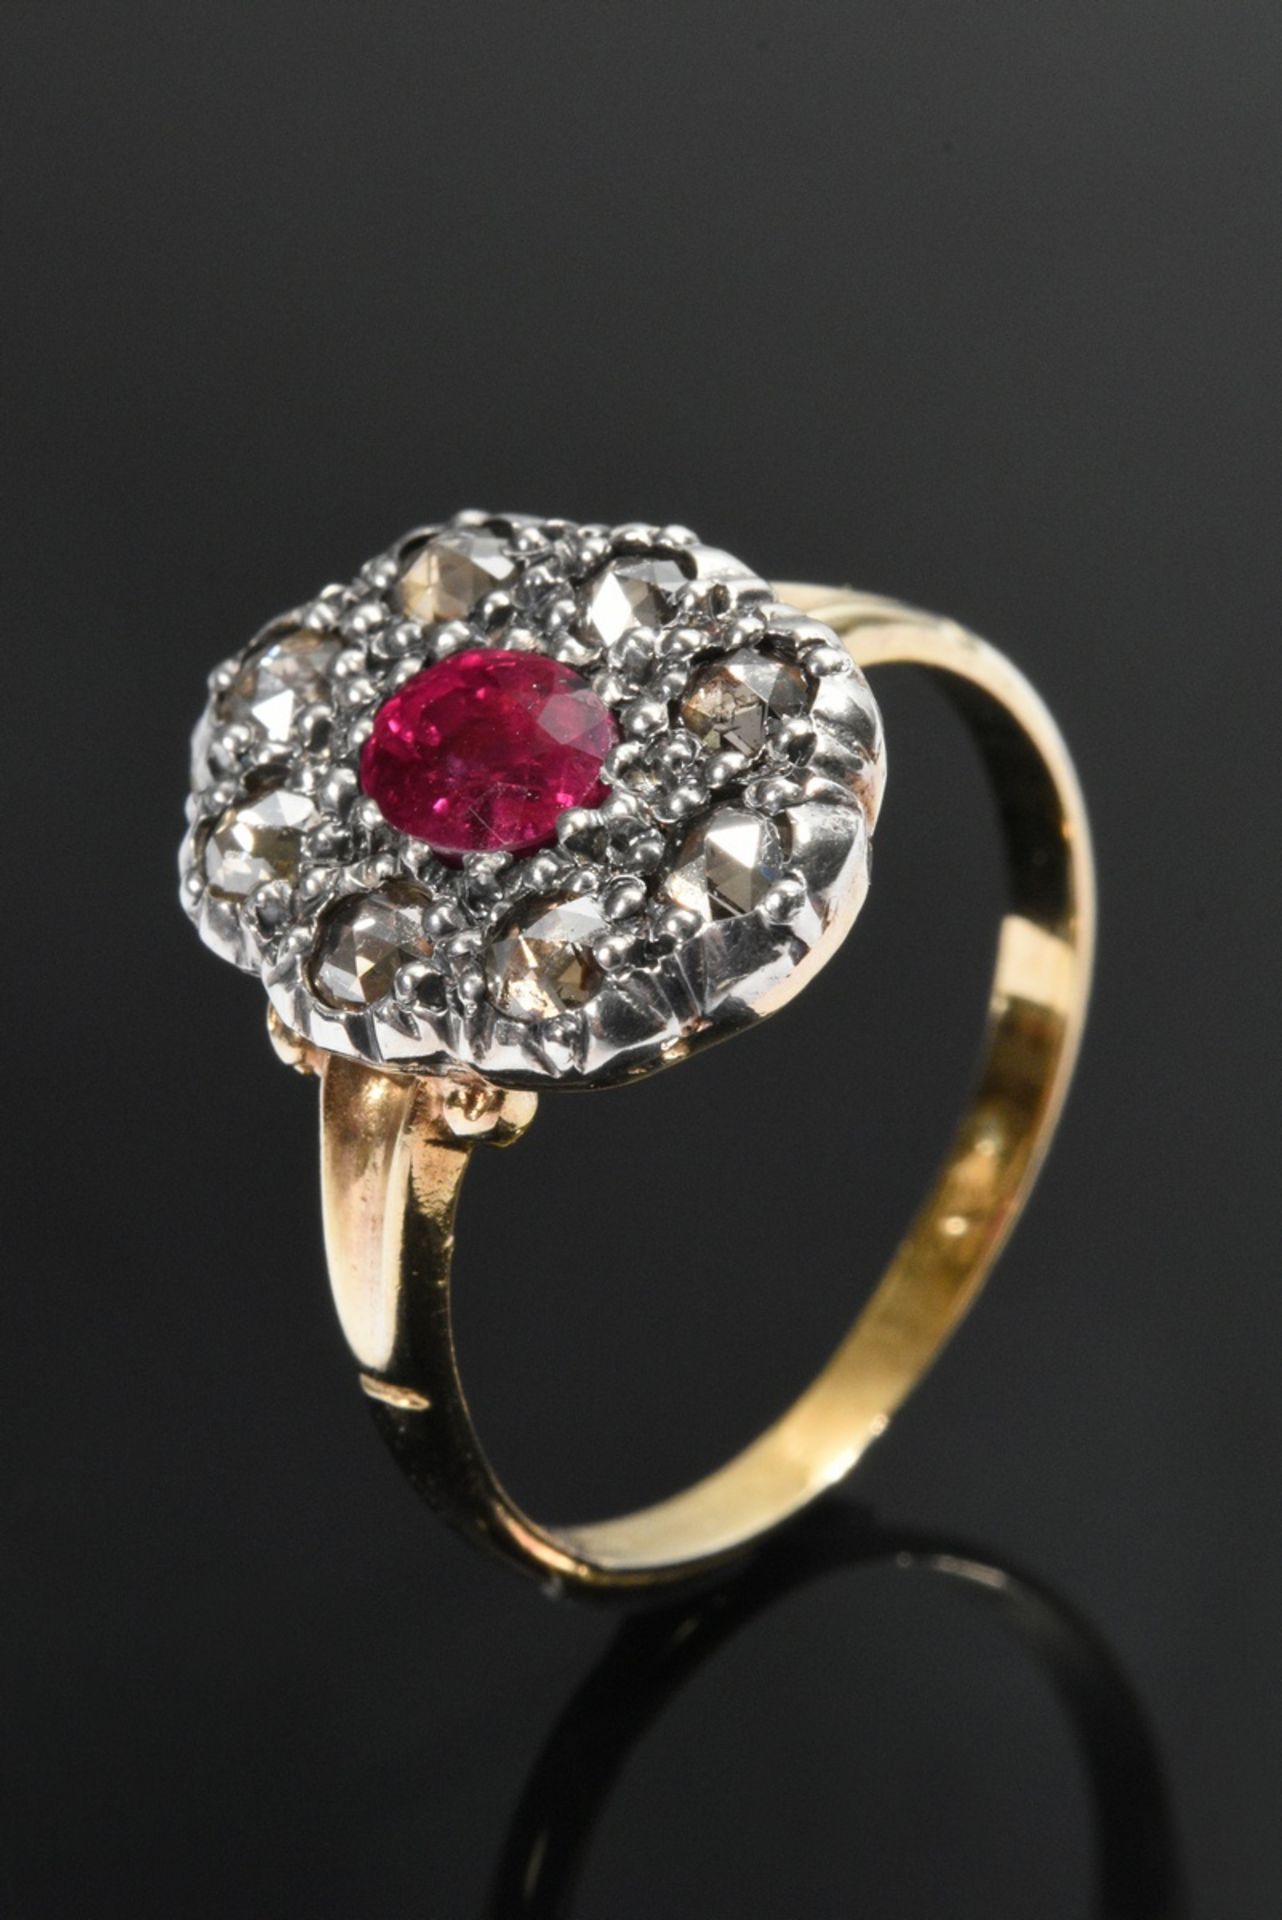 Gelbgold 585 und Silber Biedermeier Ring mit Rubin in Amsterdamer Diamantrosen Kranz (zus. ca. 0.25